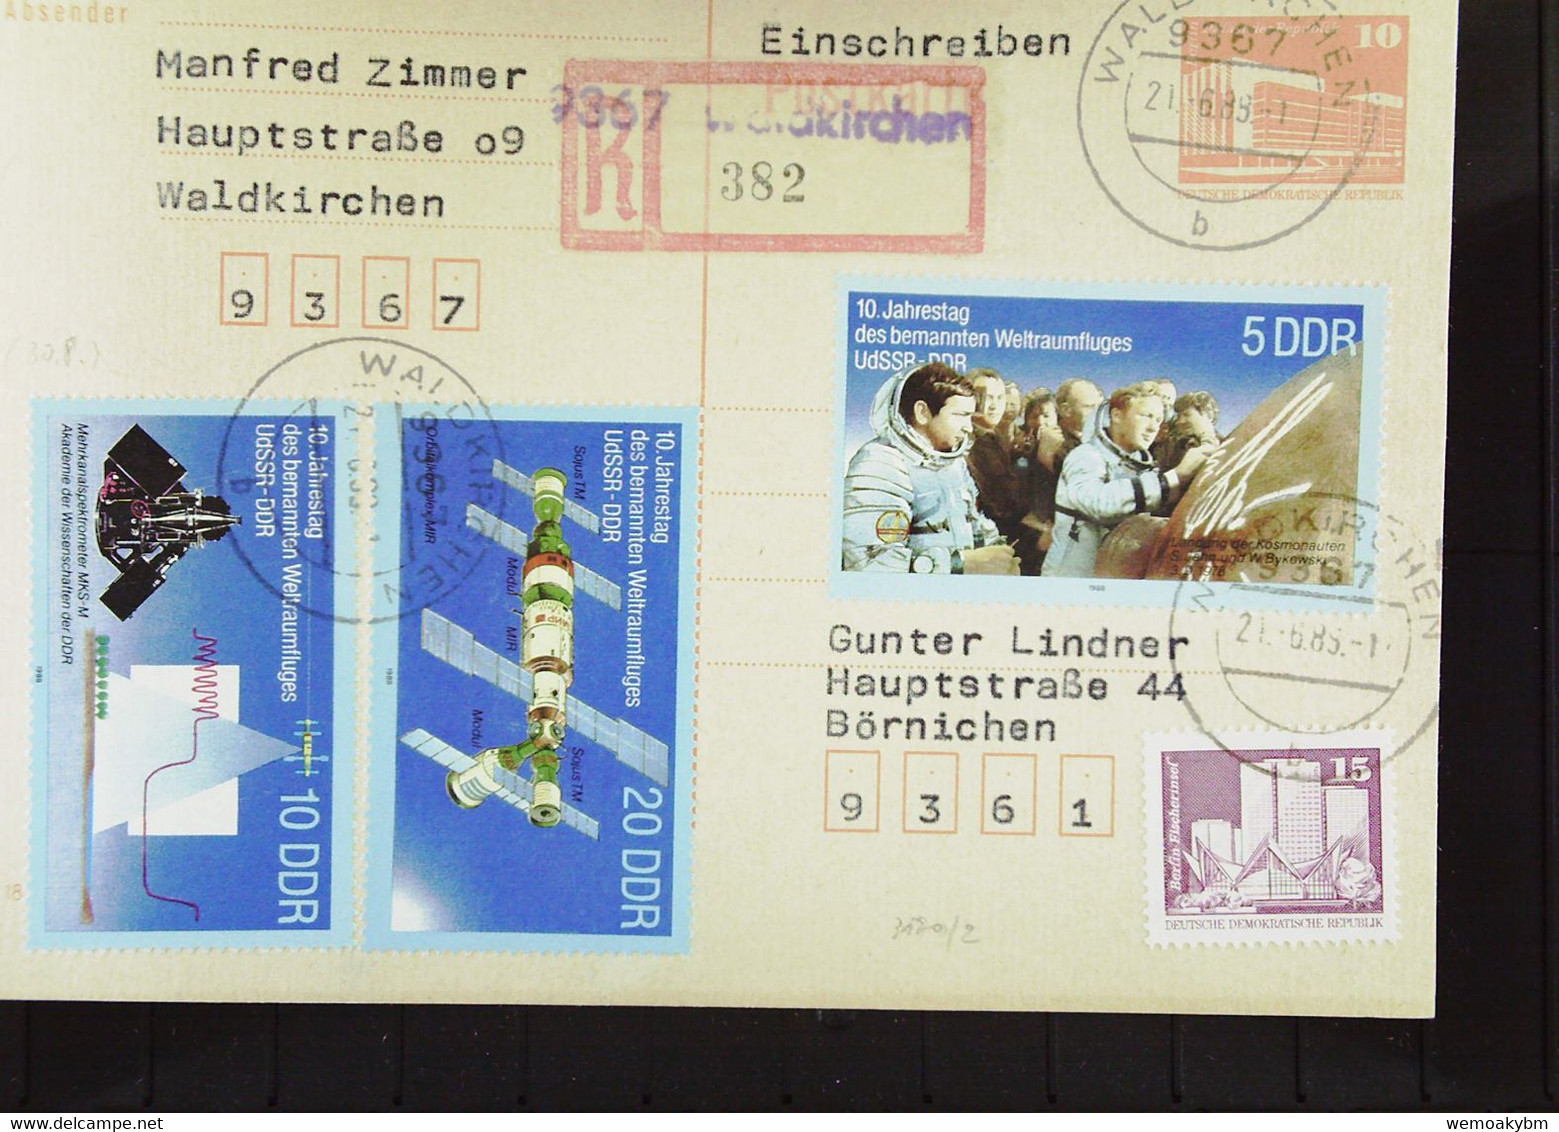 DDR: R-Ganzsachen-Karte Einschreiben Aus 9367 WALDKIRCHEN Mit Aushilfs-R-Zettel (382) Portogenau  21.6.88 Knr: 3190, GA - Etiquettes De Recommandé